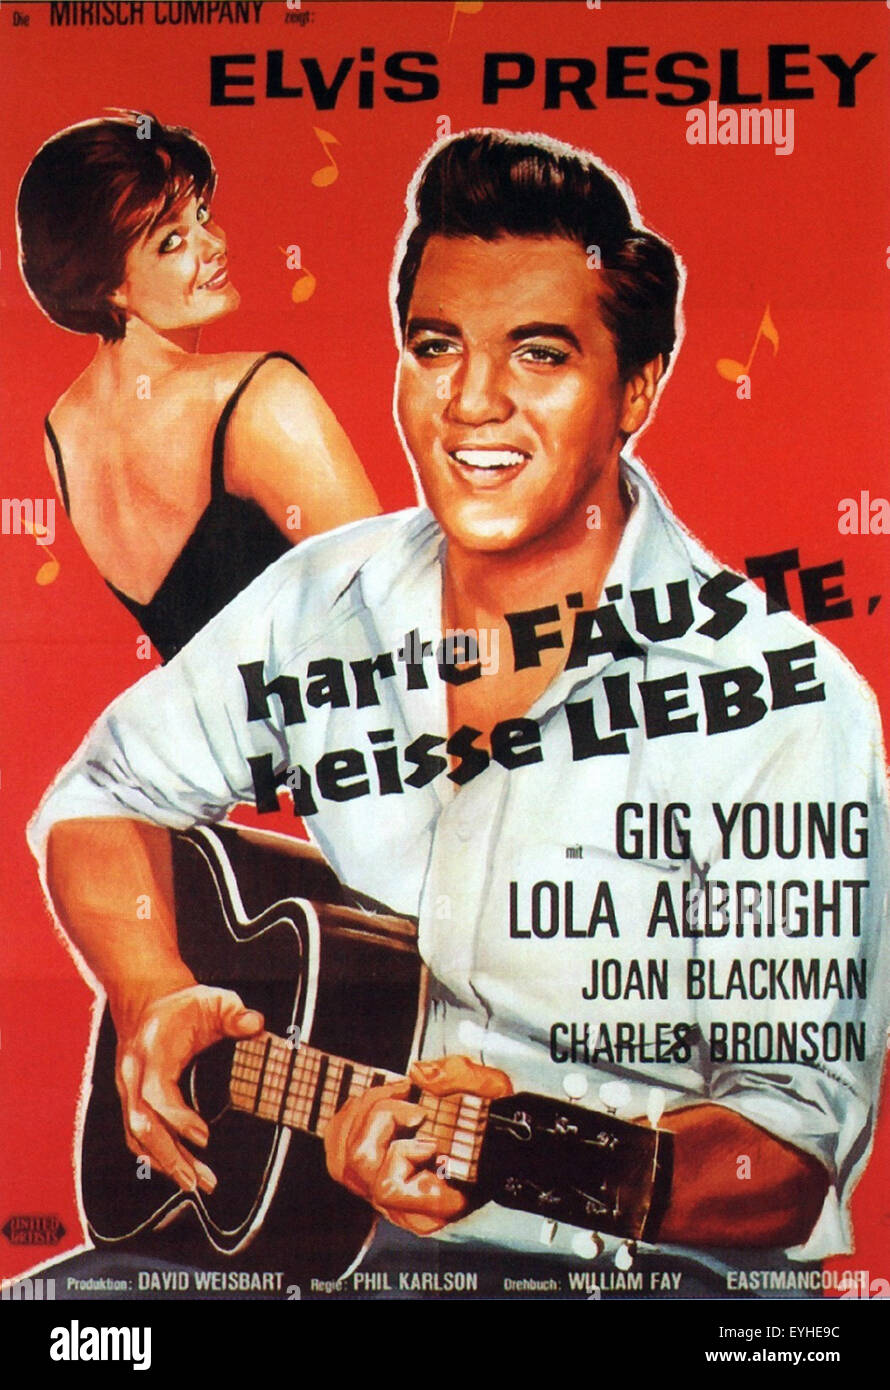 Kid Galahad - 1962 - Elvis Presley - deutsches Filmplakat Stockfoto